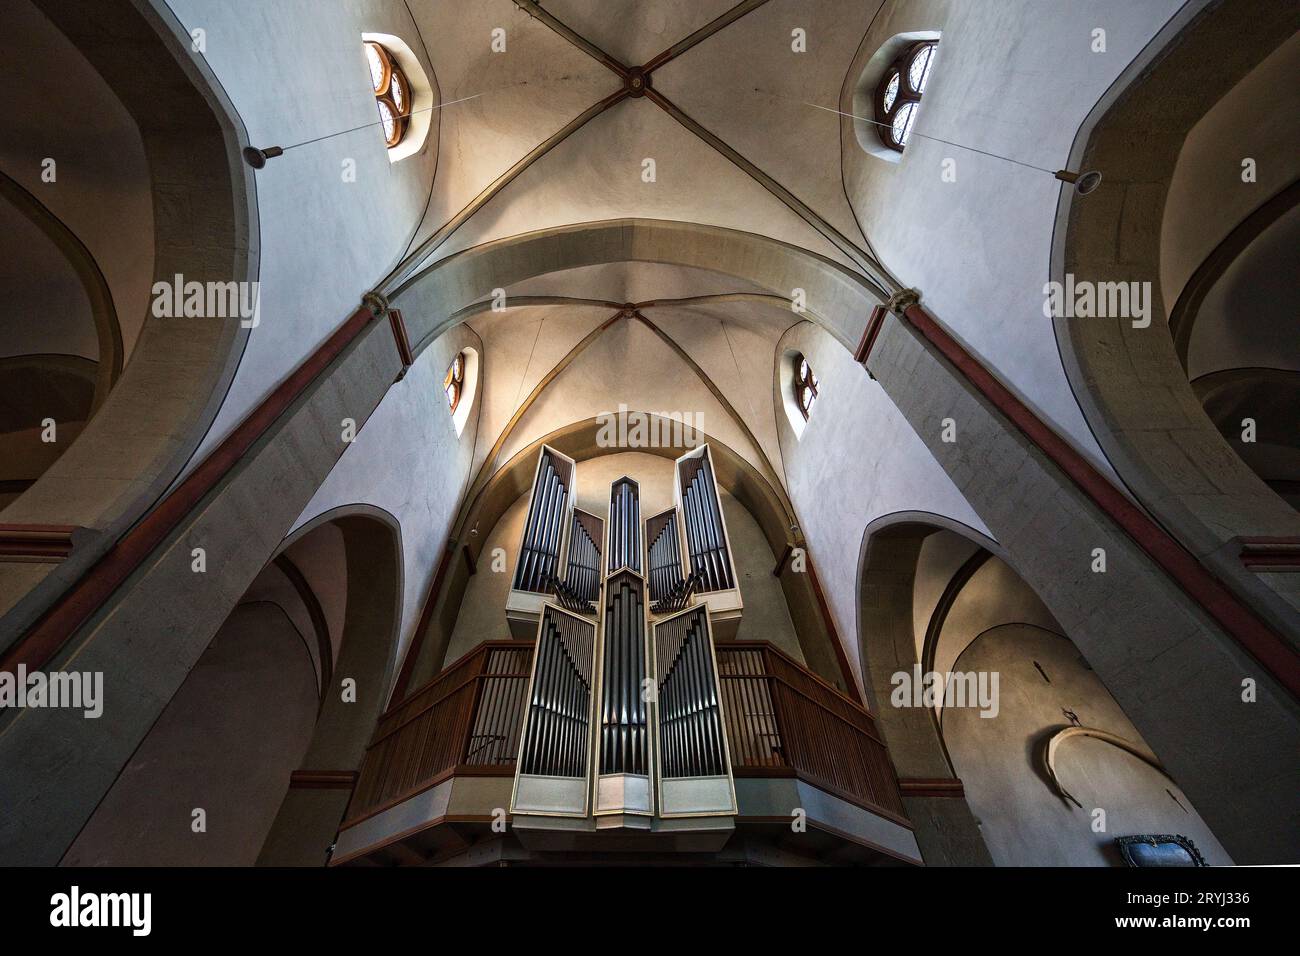 Église protestante Jakobus, la seule basilique gothique tardive en Westphalie, Breckerfeld, Allemagne, Europe Banque D'Images